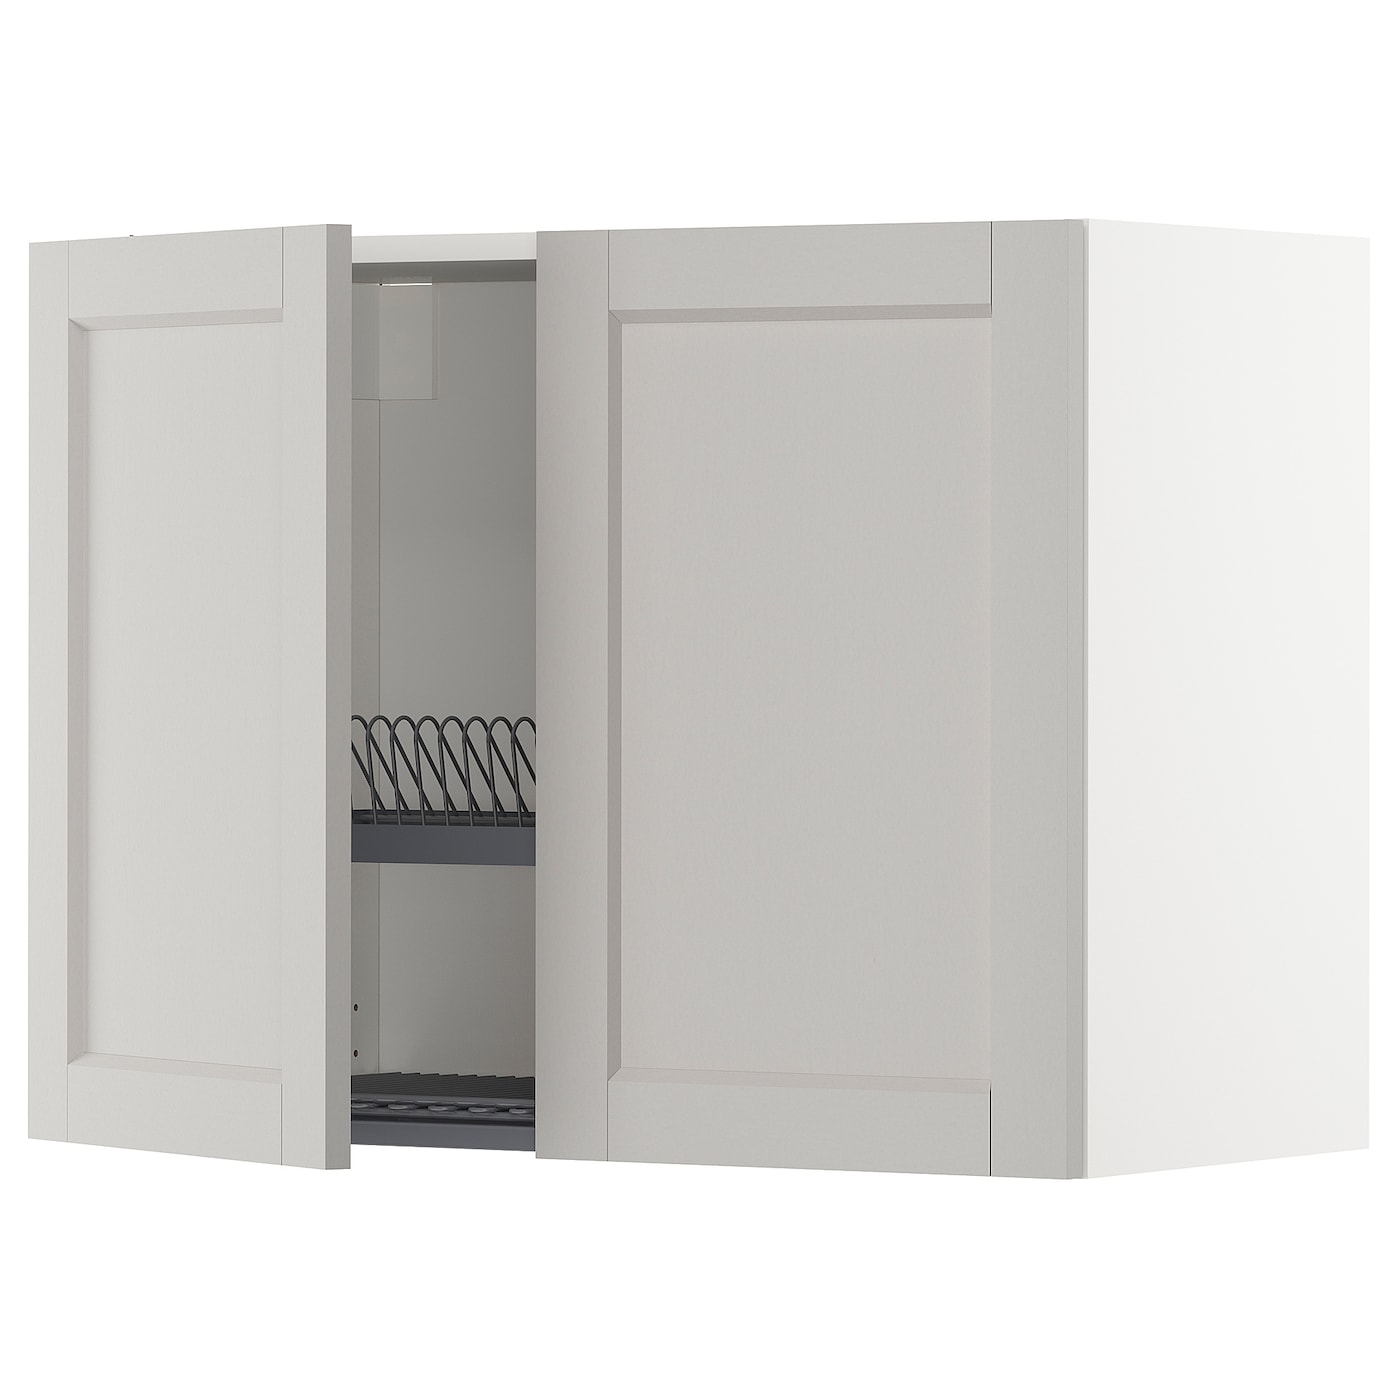 Навесной шкаф с сушилкой - METOD IKEA/ МЕТОД ИКЕА, 60х80 см, белый/светло-серый